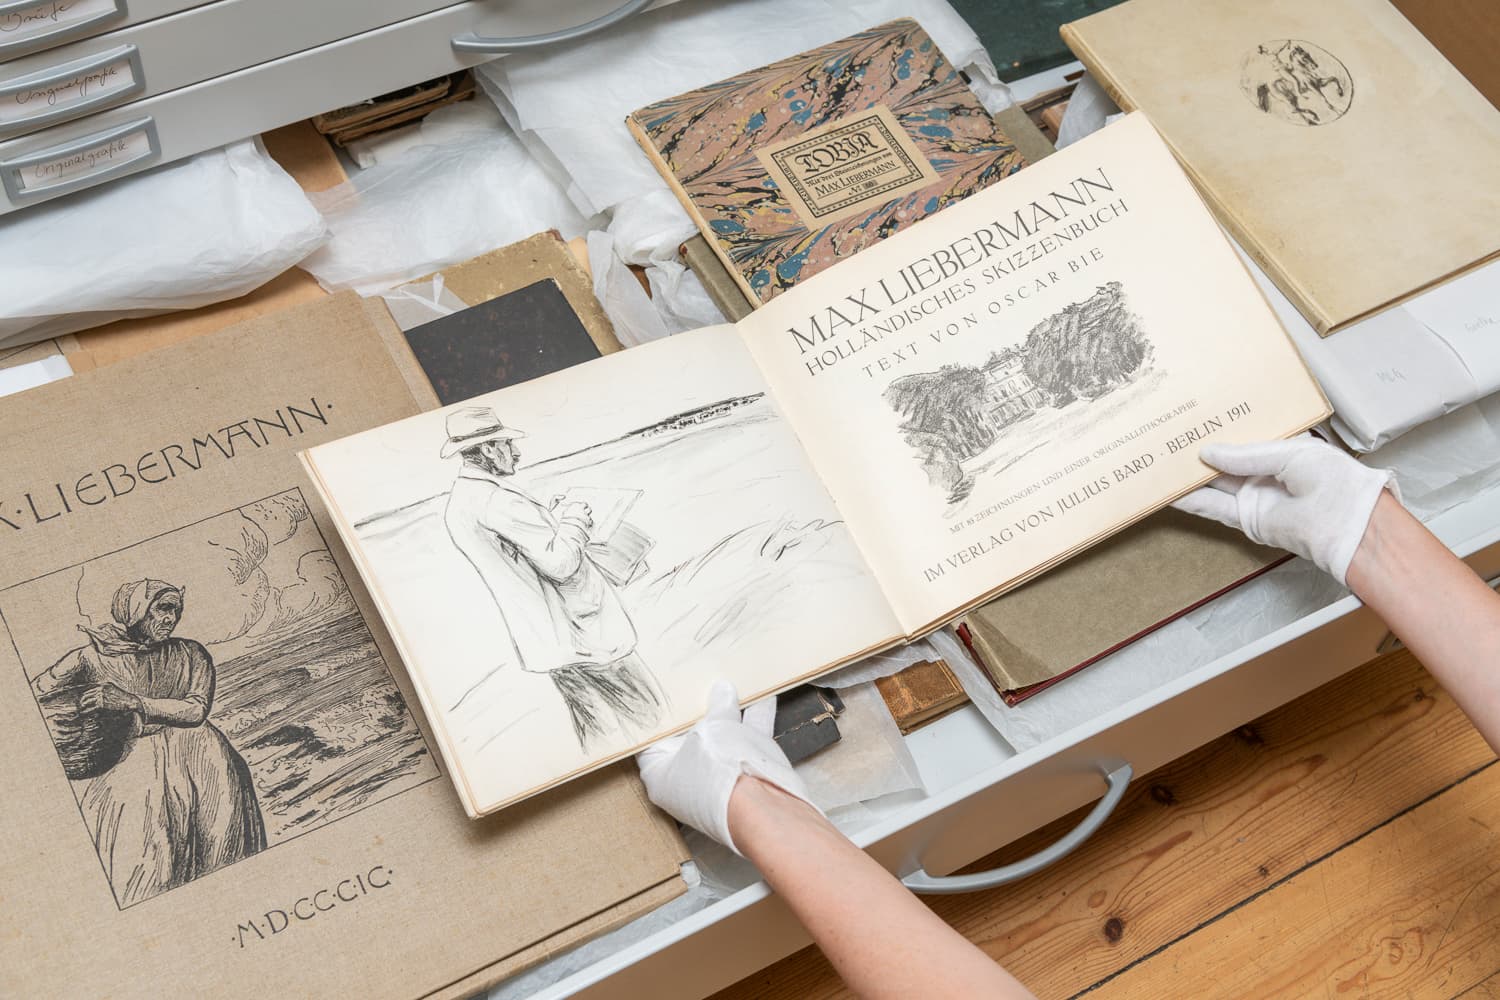 Ein aufgeschlagenes historisches Buch wird über einer geöffneten Schublade mit weiterem historischen Material von zwei Händen mit weißen Baumwollhandschuhen gehalten.